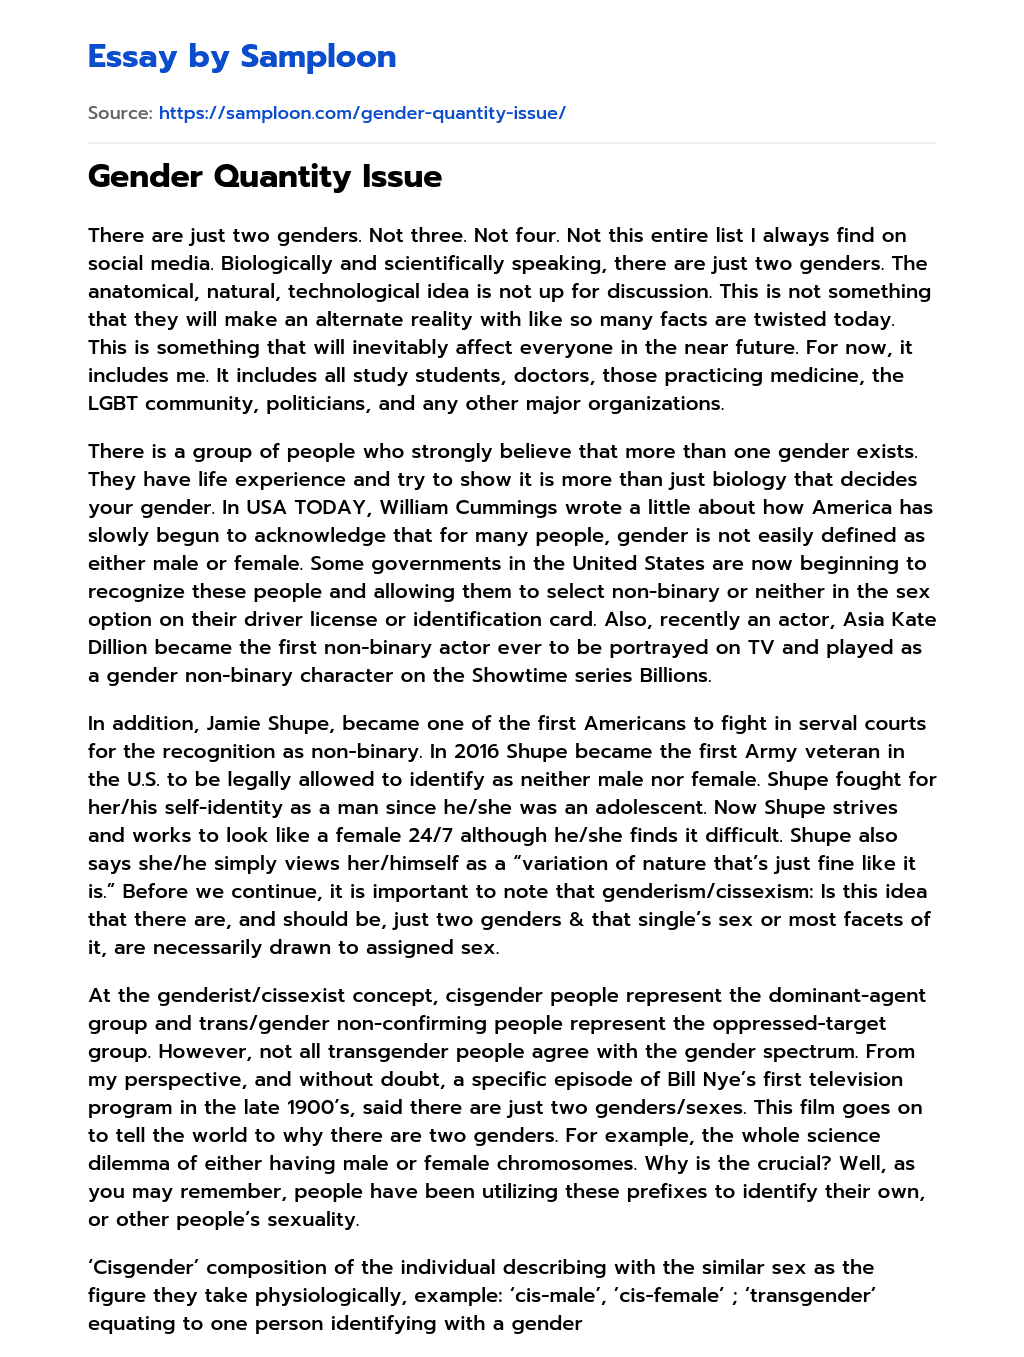 Gender Quantity Issue essay